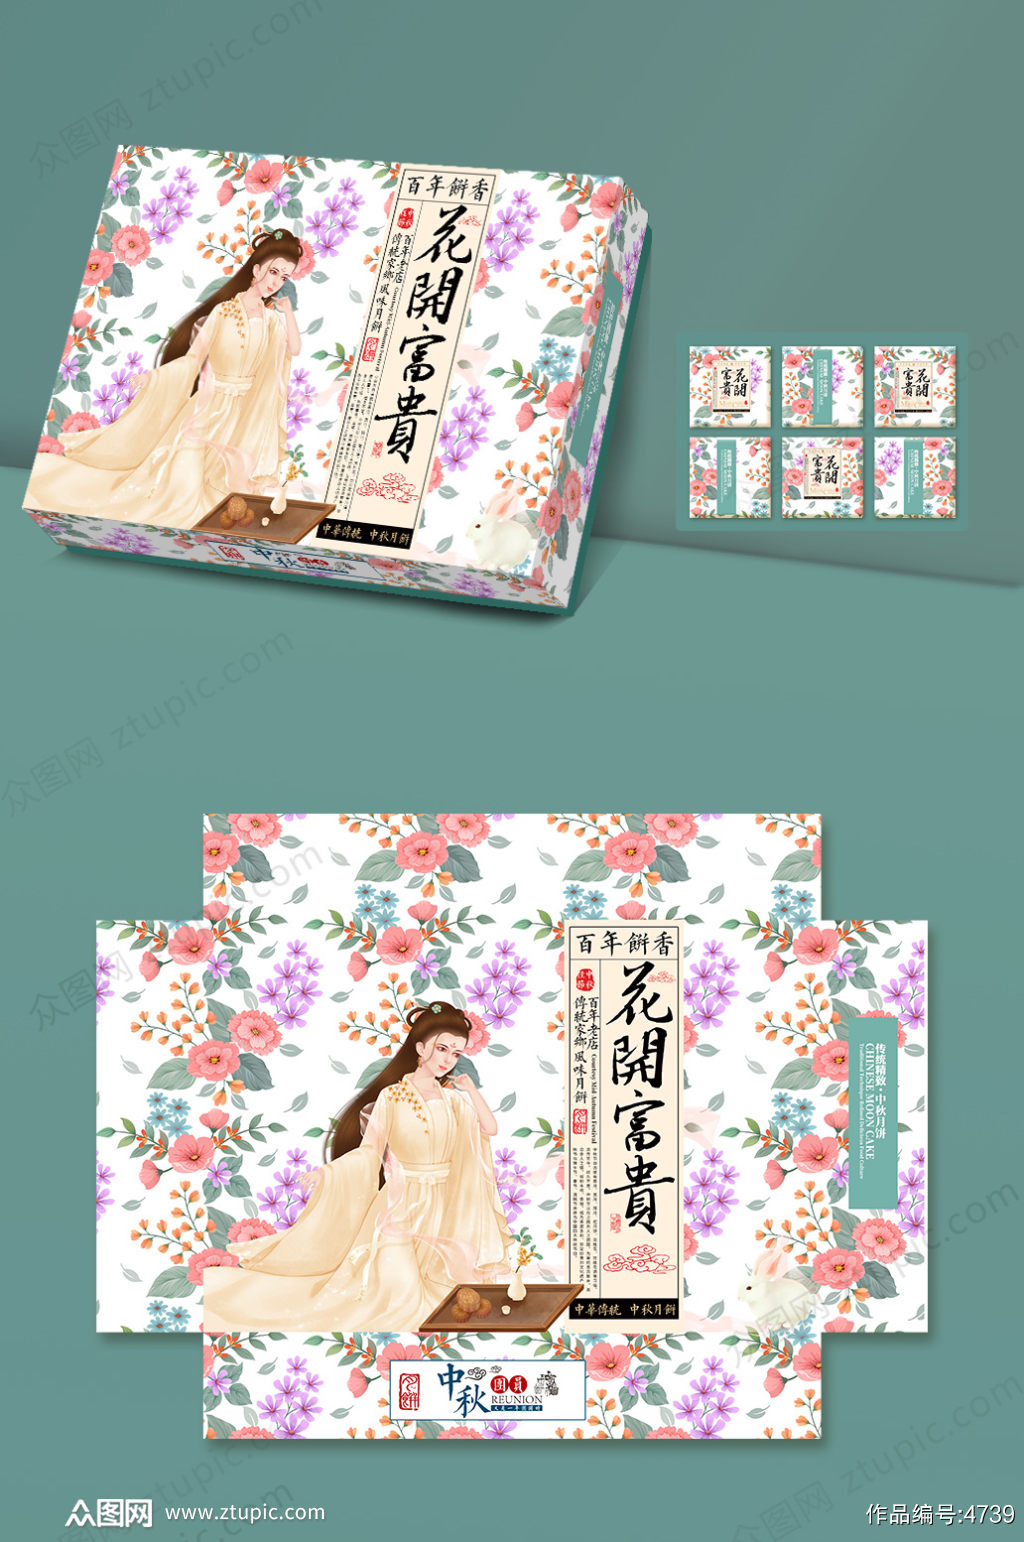 原创手绘时尚花纹中秋节月饼包装盒设计素材